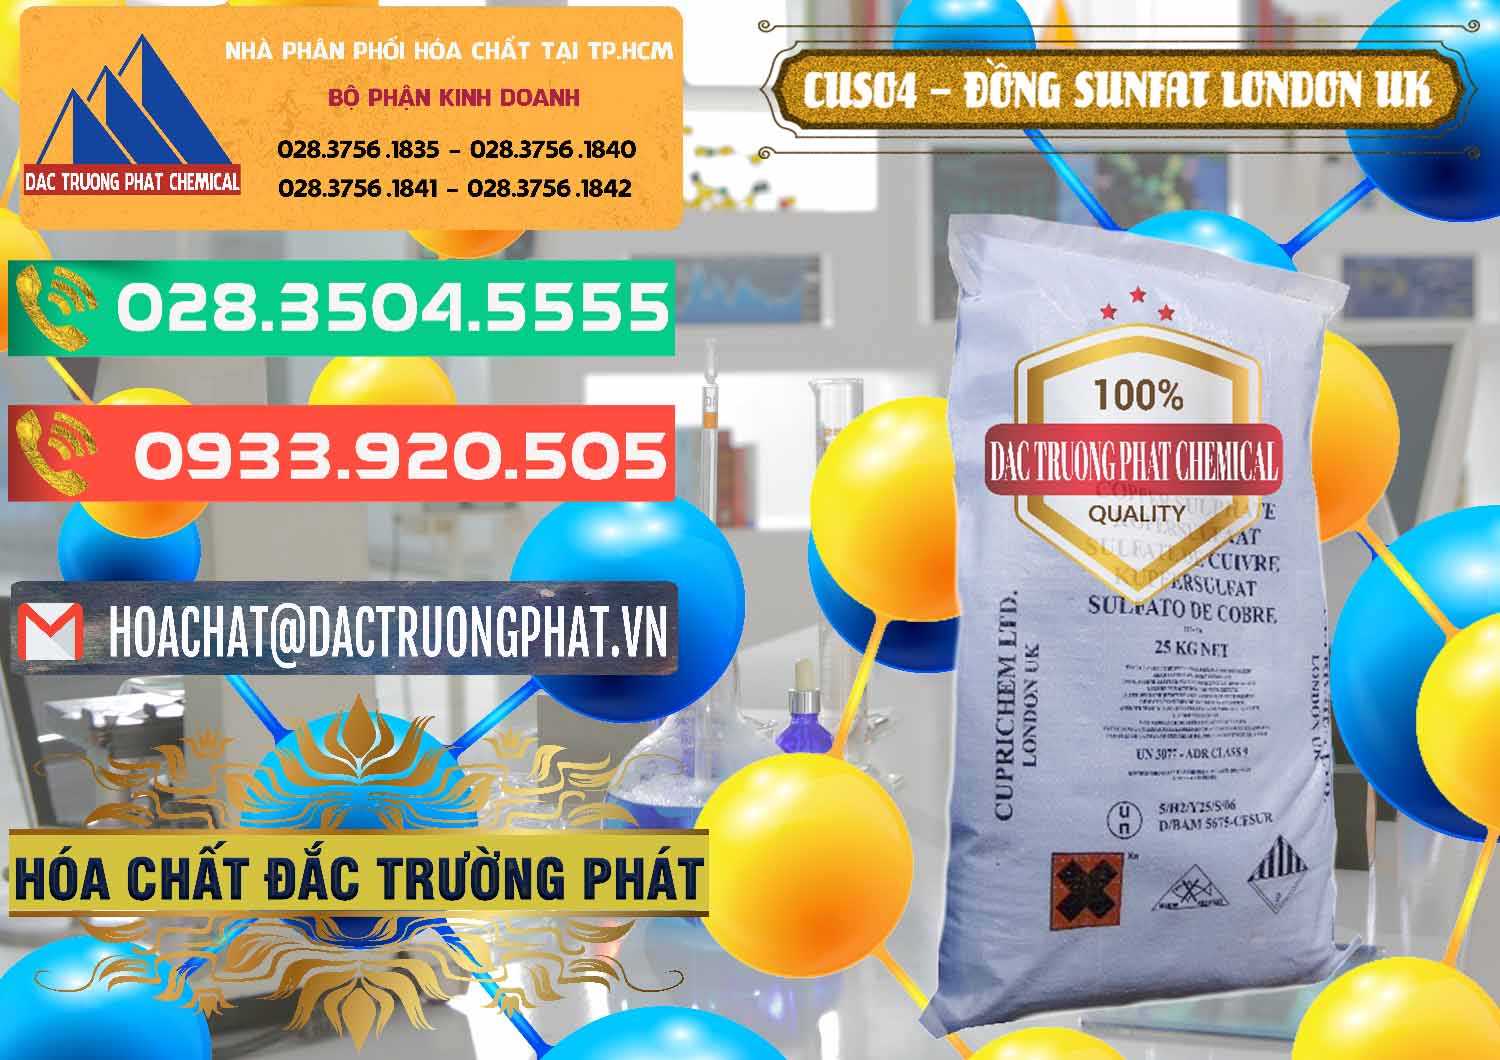 Cung cấp và bán CuSO4 – Đồng Sunfat Anh Uk Kingdoms - 0478 - Công ty chuyên kinh doanh ( cung cấp ) hóa chất tại TP.HCM - congtyhoachat.com.vn